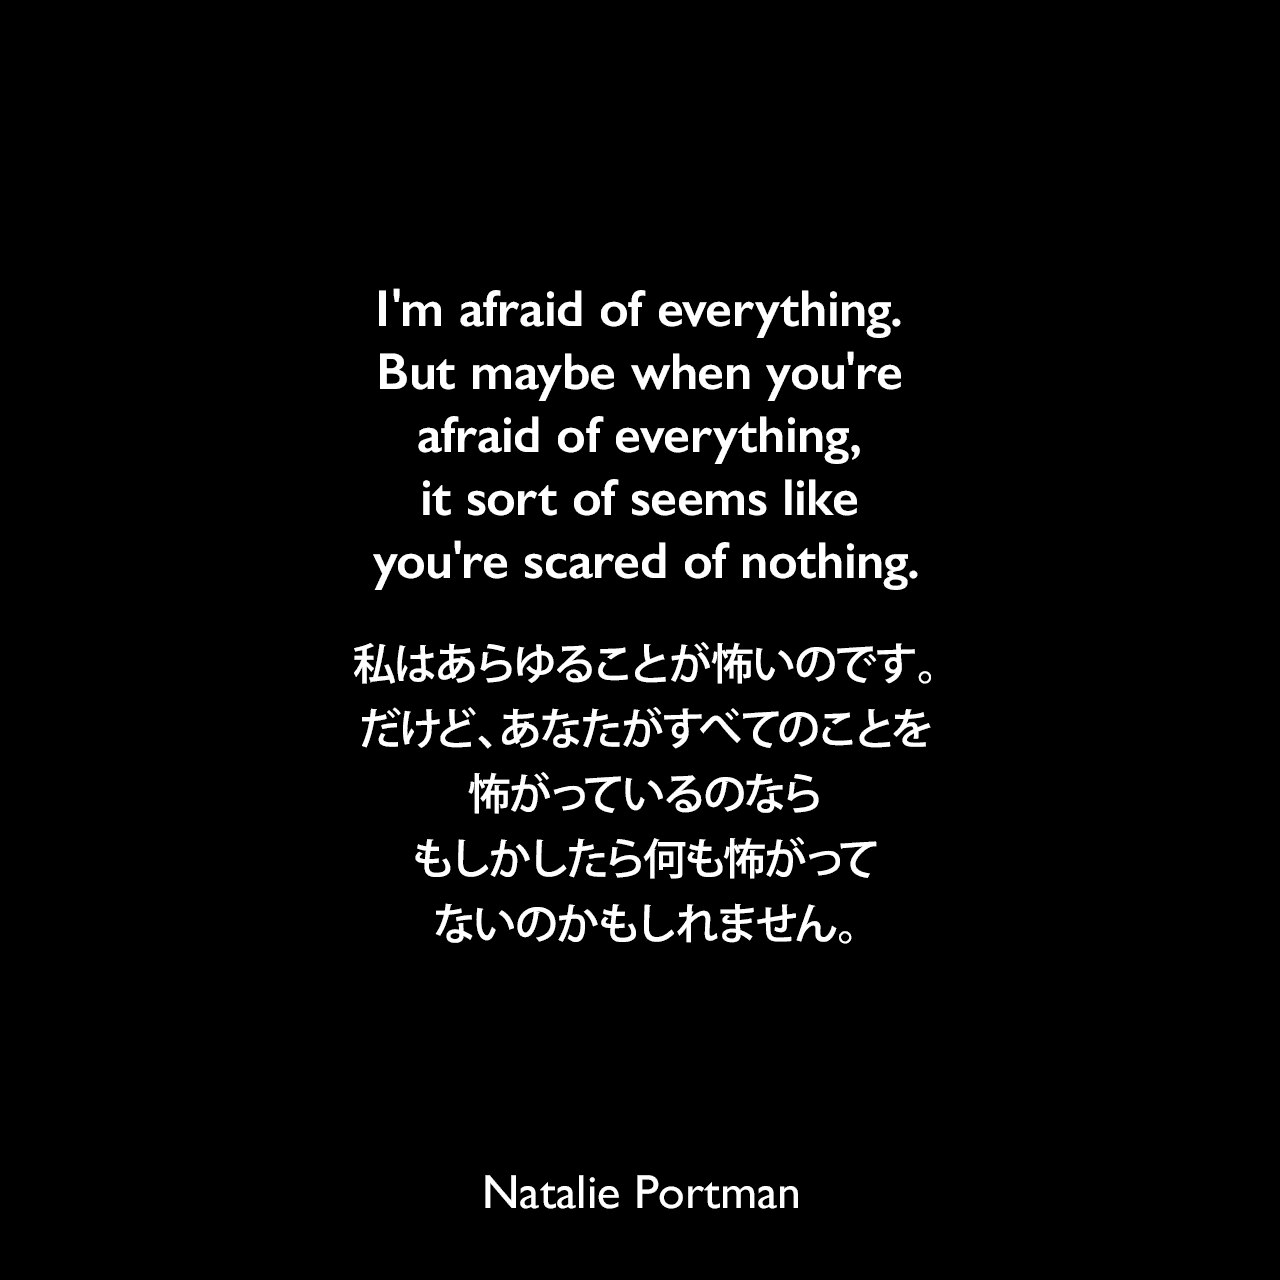 I'm afraid of everything. But maybe when you're afraid of everything, it sort of seems like you're scared of nothing.私はあらゆることが怖いのです。だけど、あなたがすべてのことを怖がっているのなら、もしかしたら何も怖がってないのかもしれません。Natalie Portman